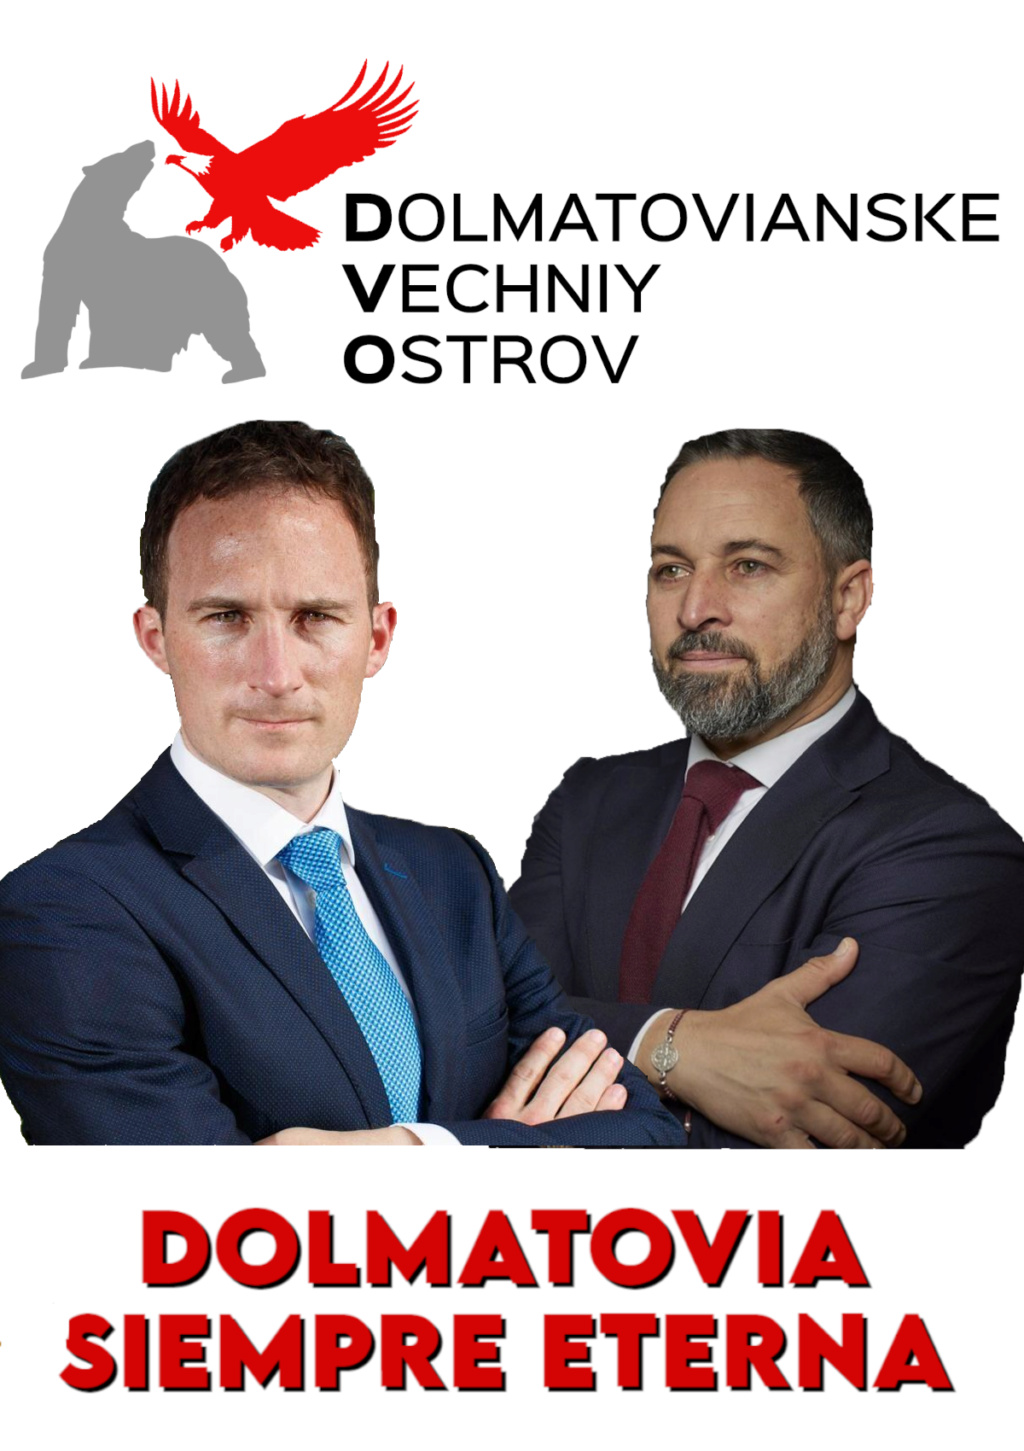 [DVO-KD] Campaña electoral de DVO-KD en Vechniy Ostrov Vdo_lo10